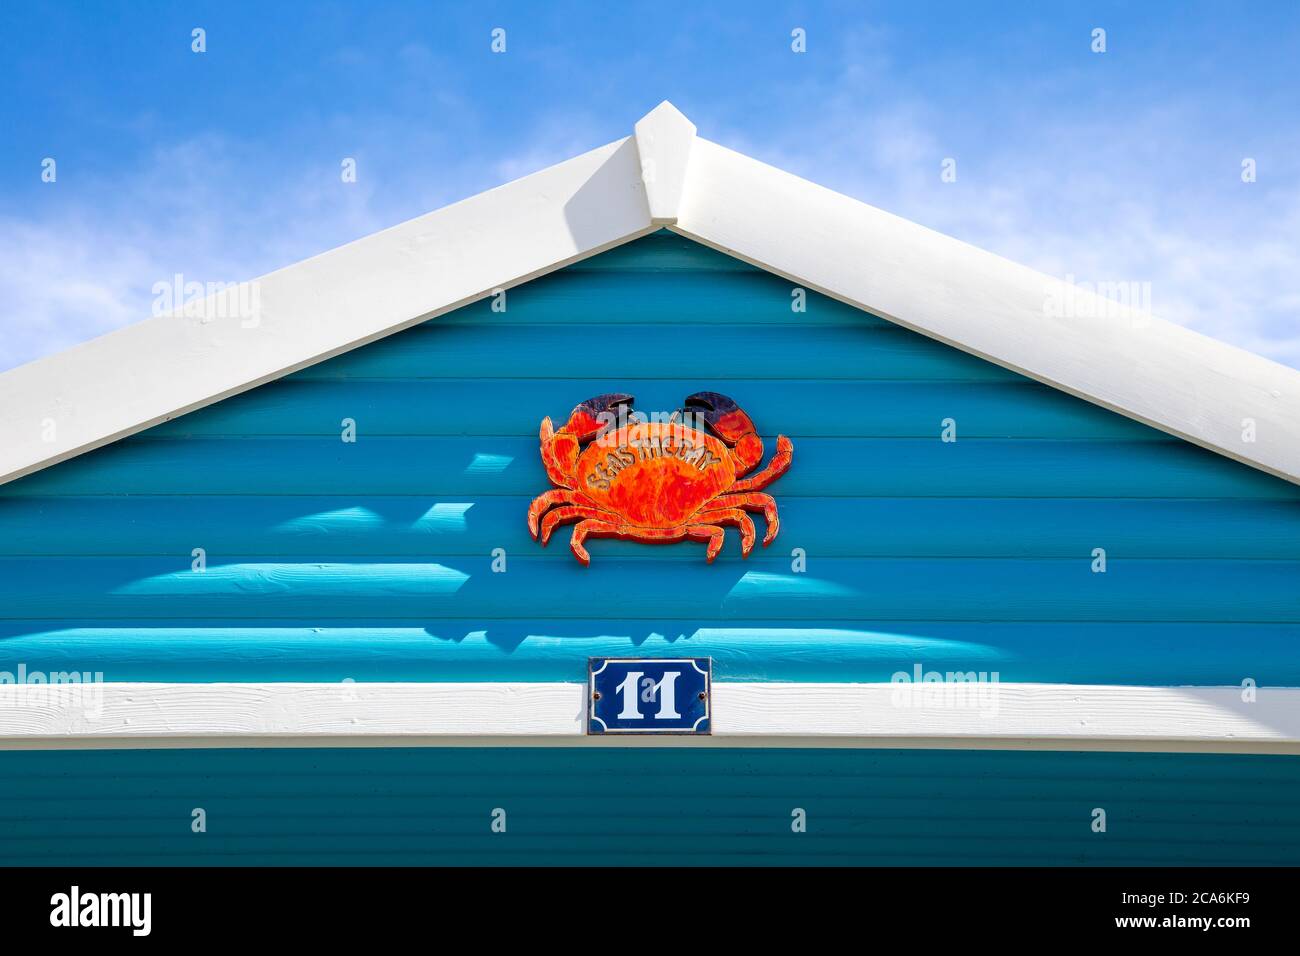 Blaue Fassade einer Strandhütte mit einem Krabbenschild "Seas the day" in West Beach, Whitstable, Großbritannien Stockfoto